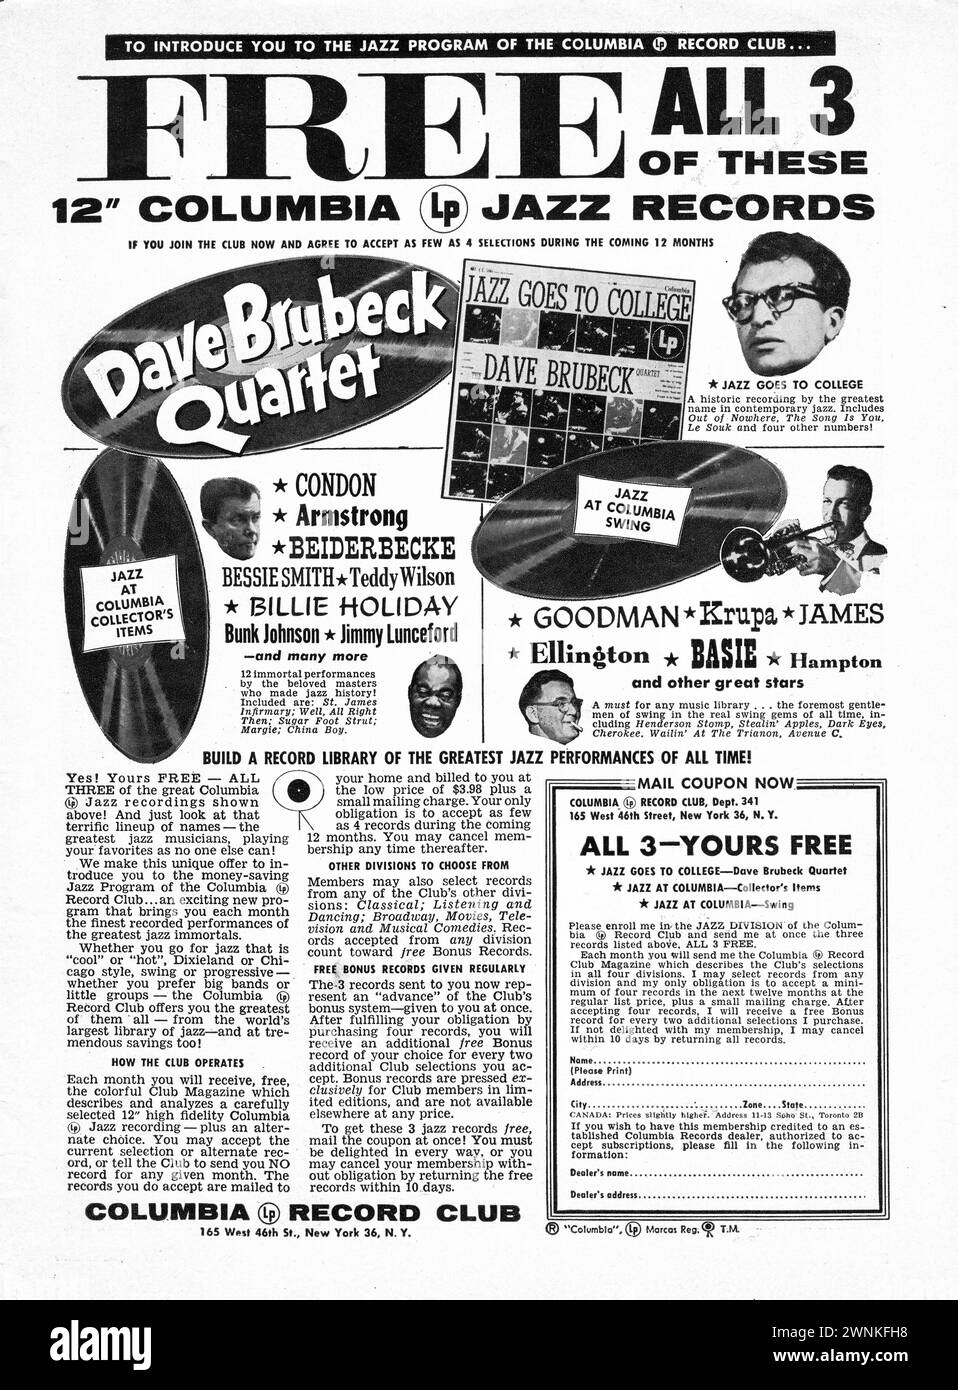 Eine Anzeige aus einem Musikmagazin von 1956 für den Columbia Jazz Record Club, die 3 kostenlose Jazz-LP-Platten anbietet, wenn Sie sich bereit erklärt haben, im nächsten Jahr 4 LP zu kaufen, wahrscheinlich zum vollen Preis. Zu den dargestellten Stars zählen Dave Brubeck, Harry James, Louis Armstrong und andere. Stockfoto